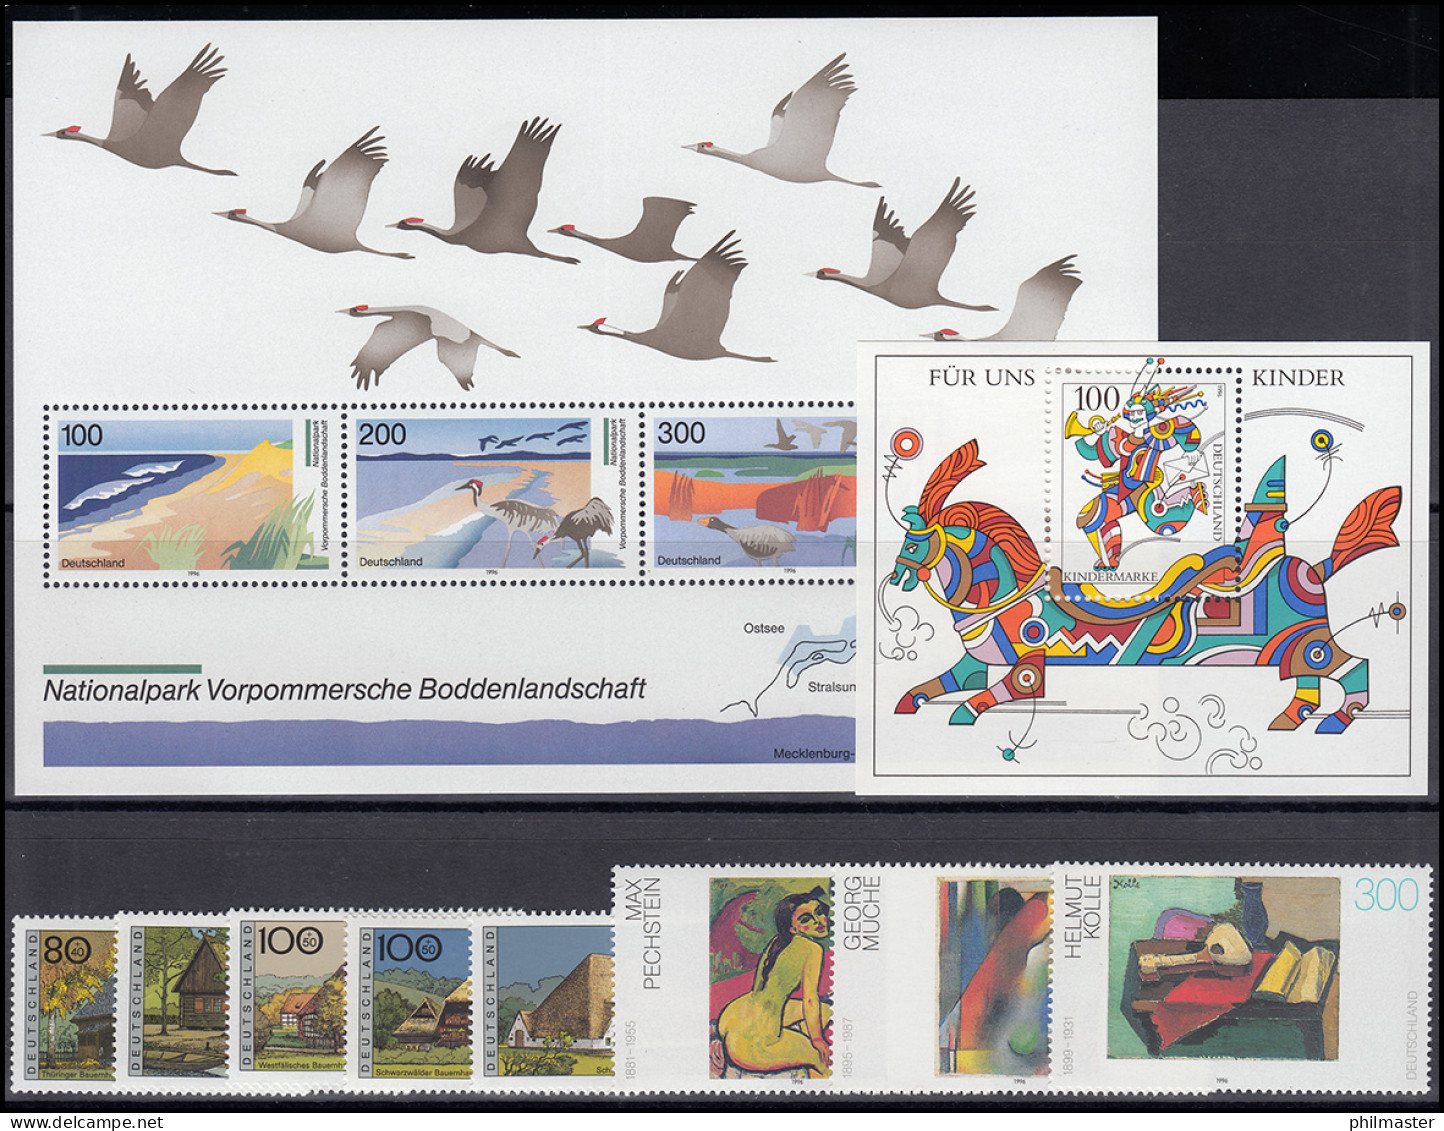 1834-1894 Bund-Jahrgang 1996 Komplett Postfrisch ** - Jahressammlungen